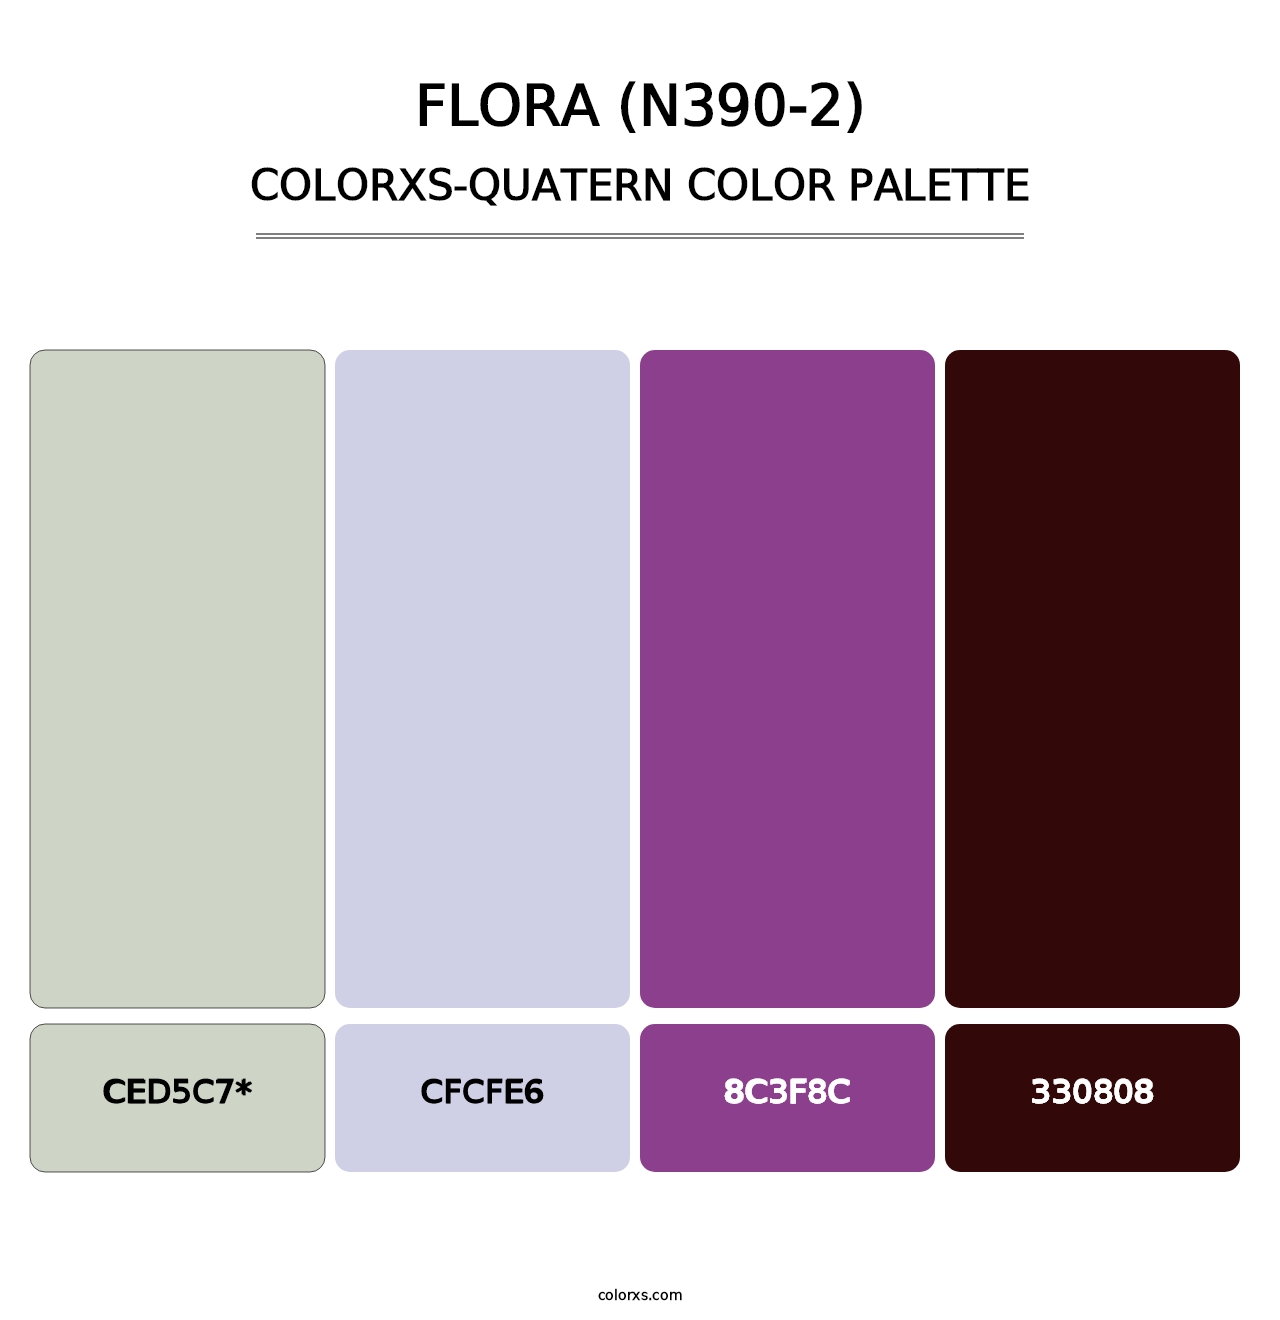 Flora (N390-2) - Colorxs Quatern Palette